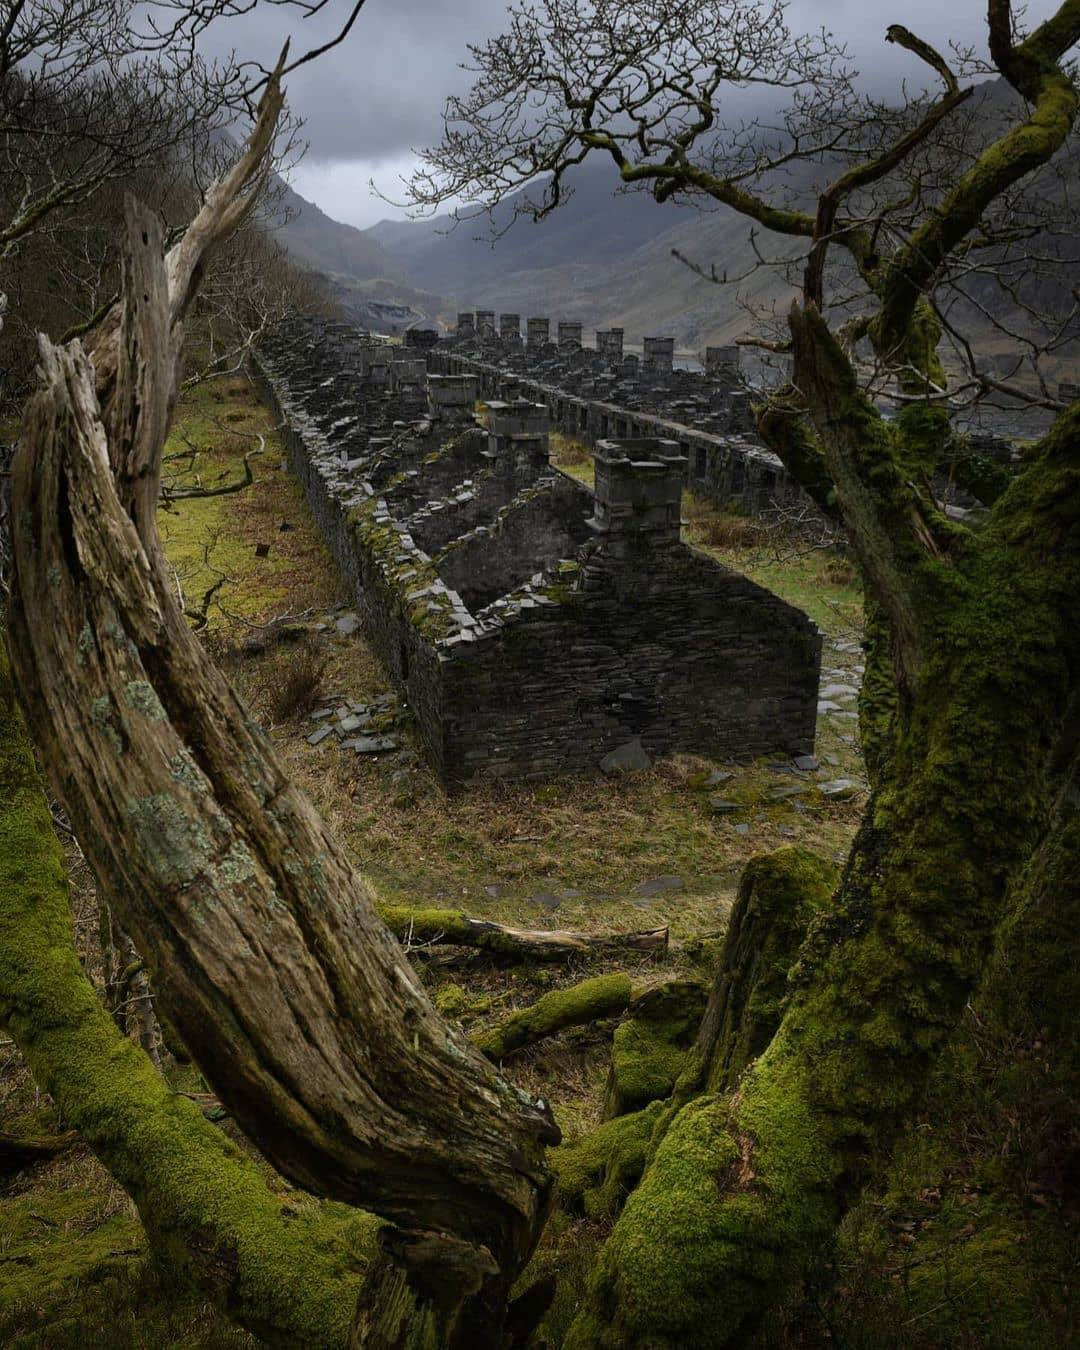 llanberis, pays de Galles – cottages de mineurs d’ardoise abandonnés du 19ème siècle